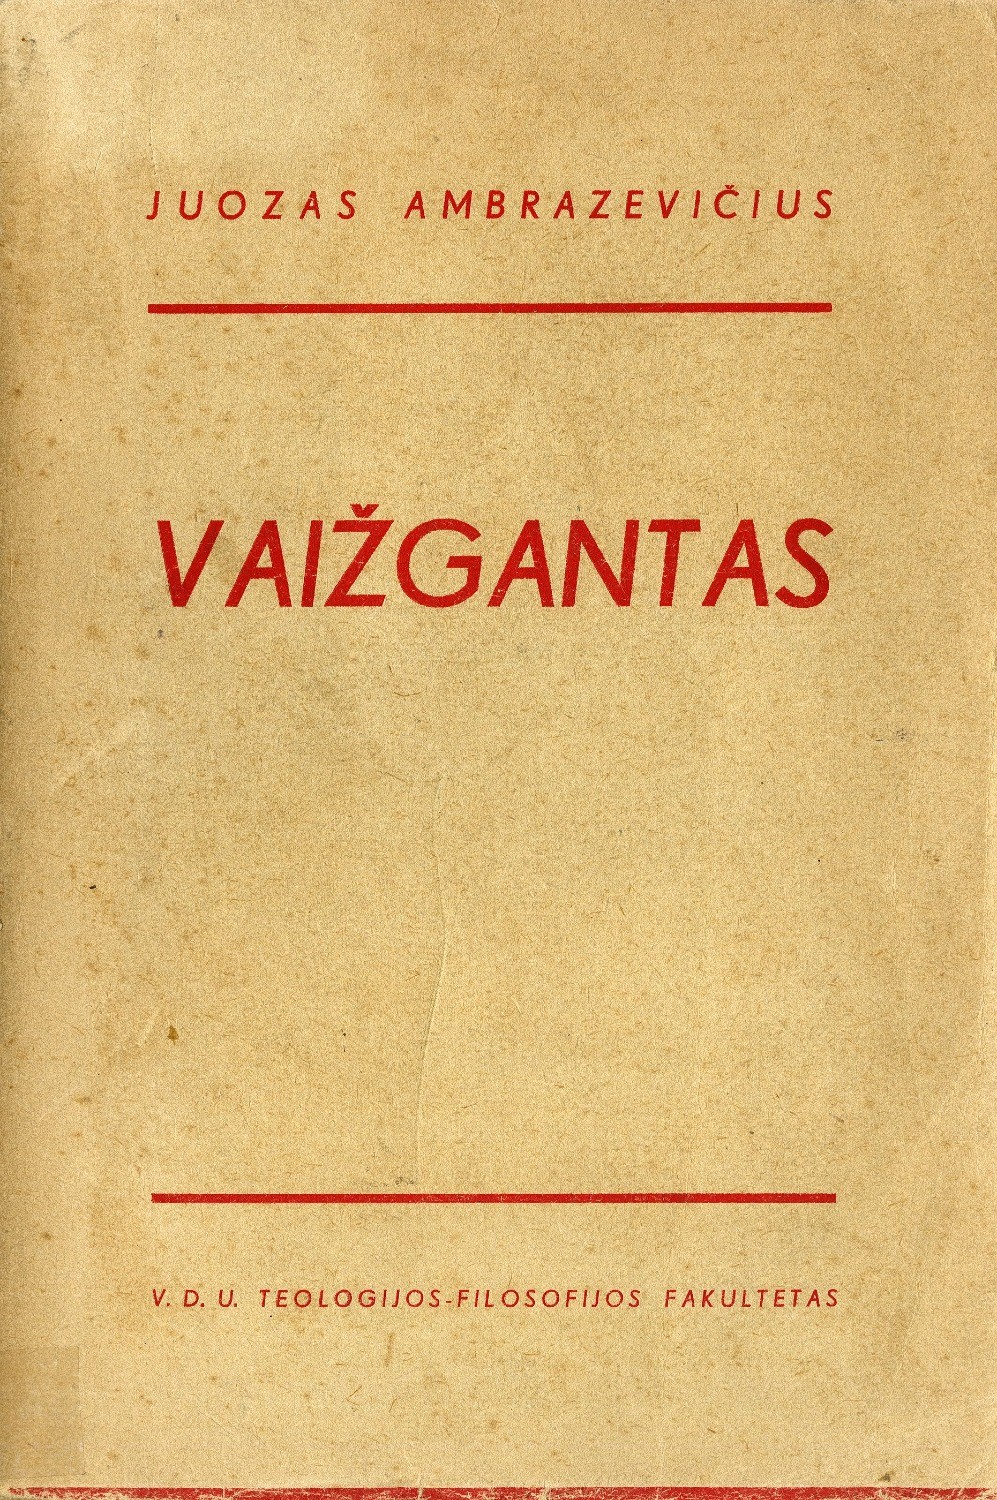 Vaižgantas: apmatai kūrybos studijai / Juozas Ambrazevičius. – Kaunas: VDU Teologijos – filosofijos fakultetas, 1936.